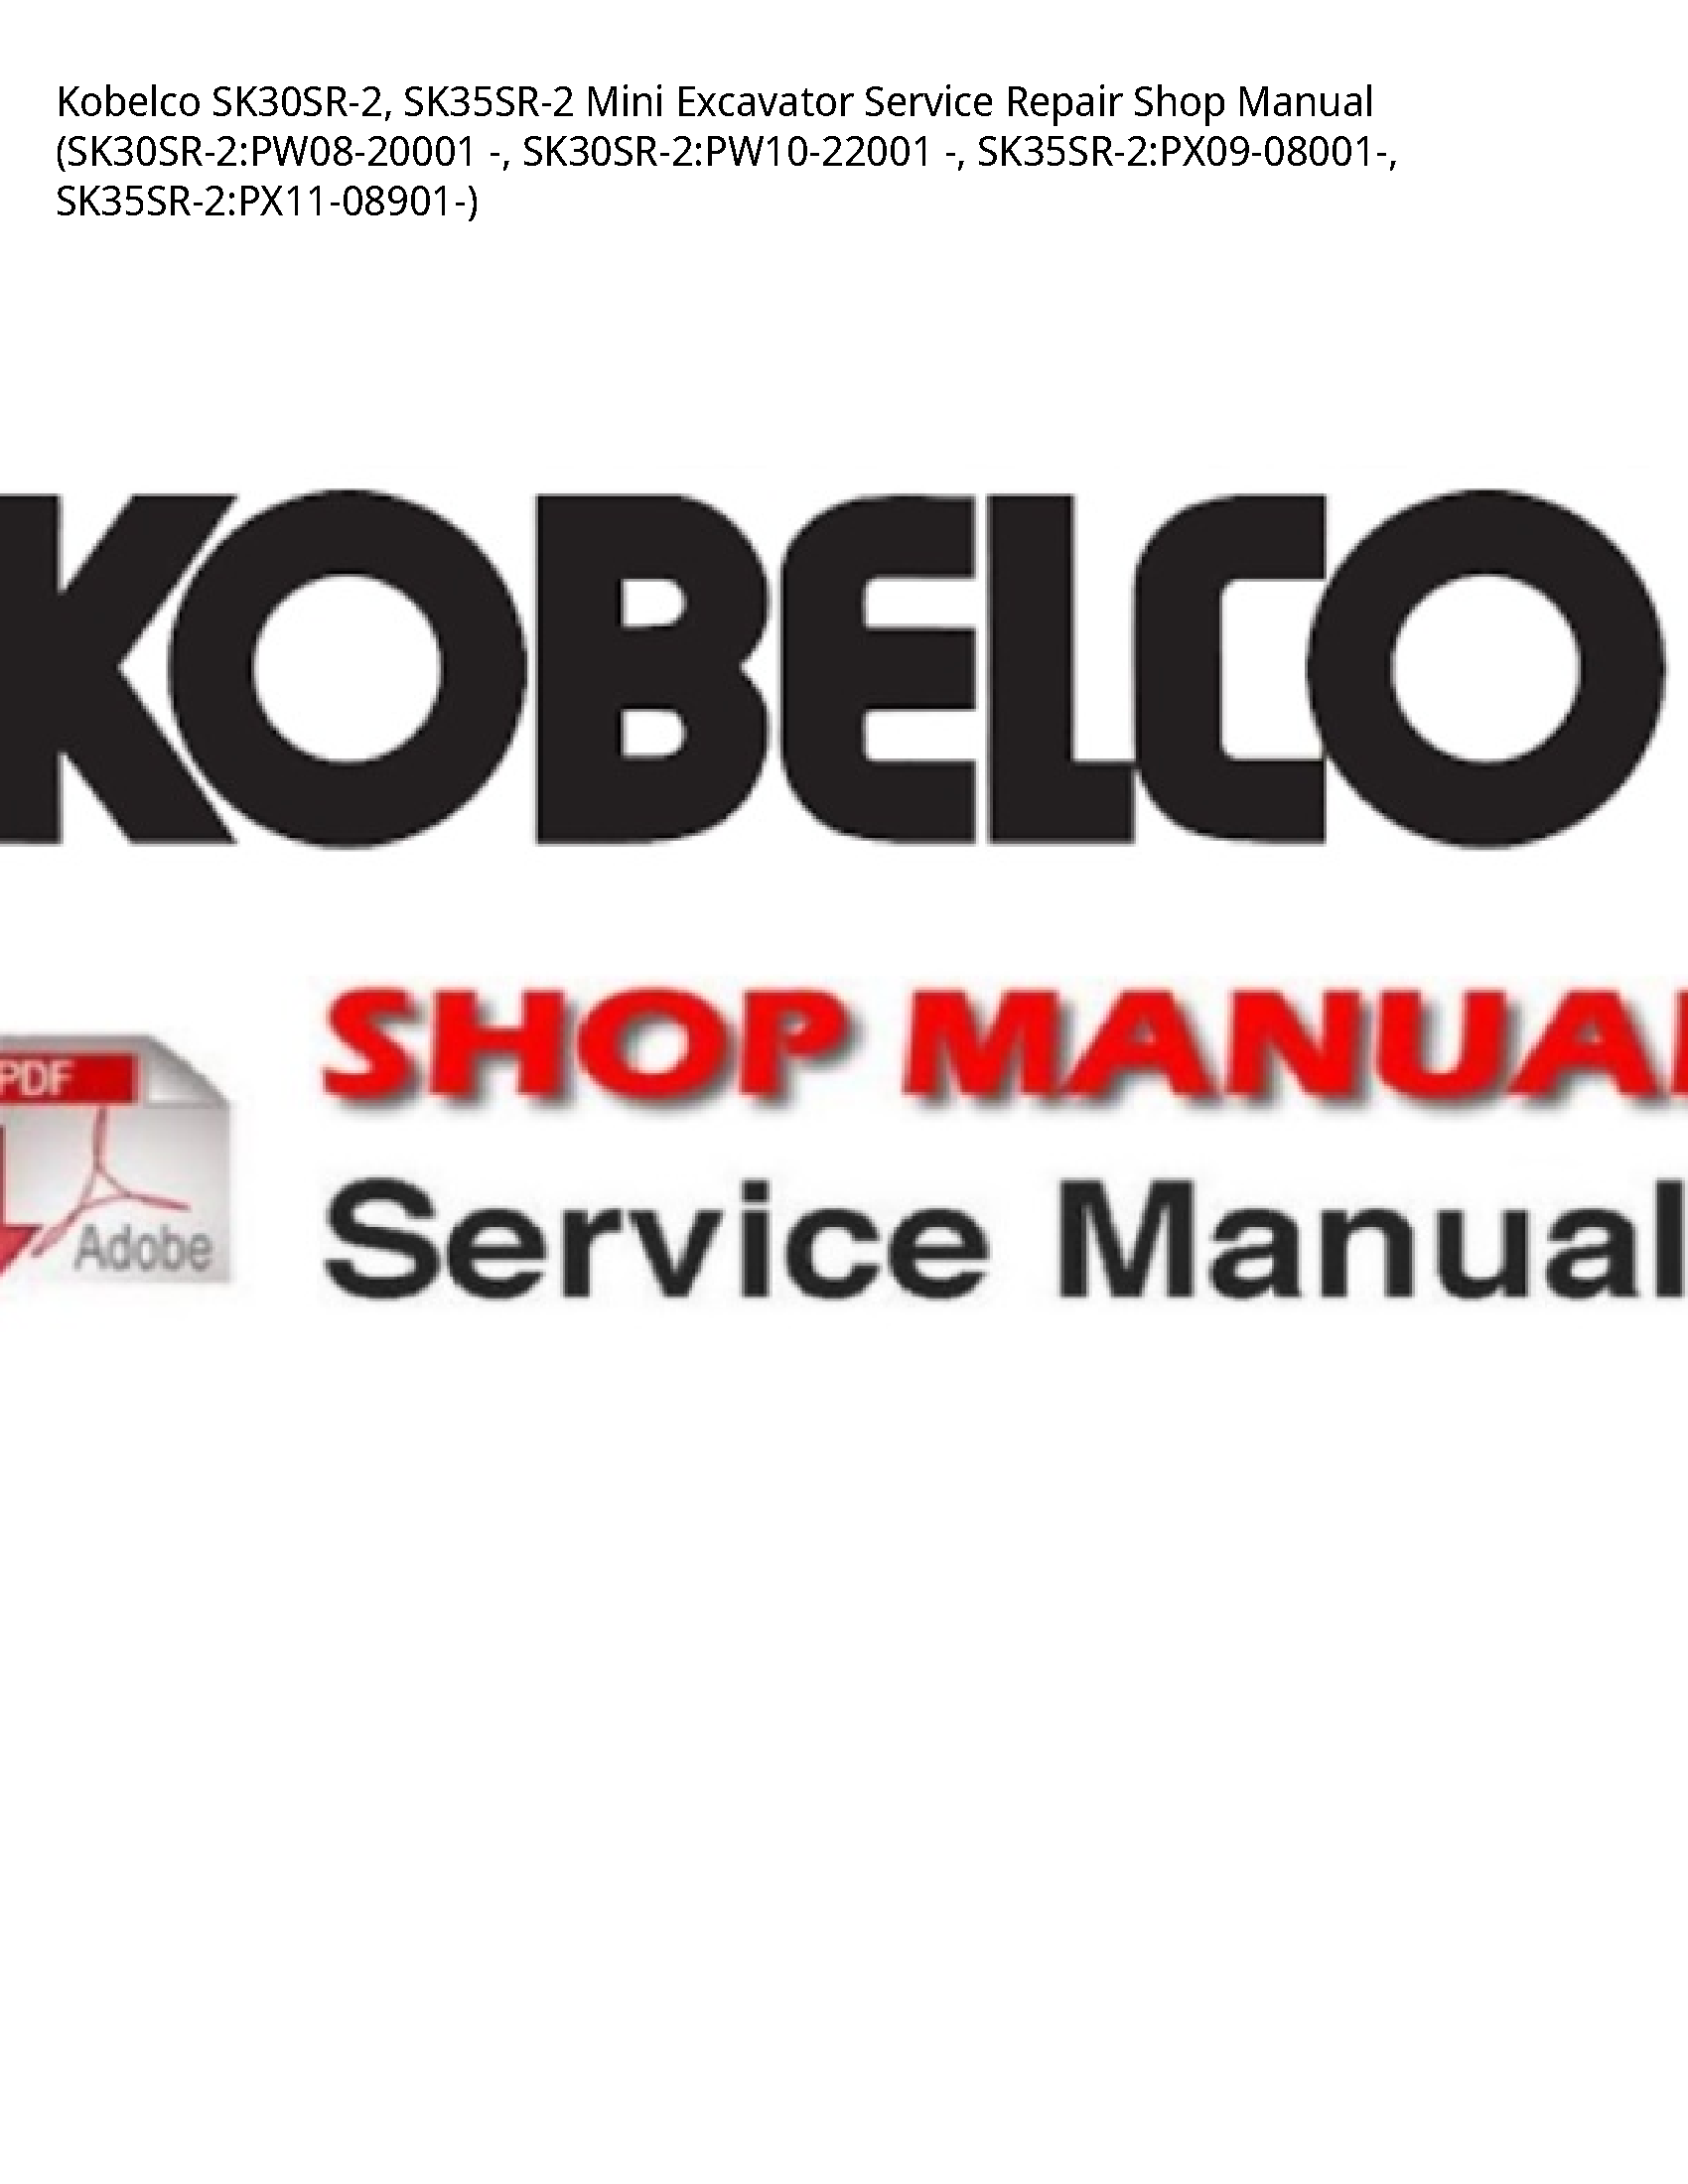 Kobelco SK30SR-2 Mini Excavator manual